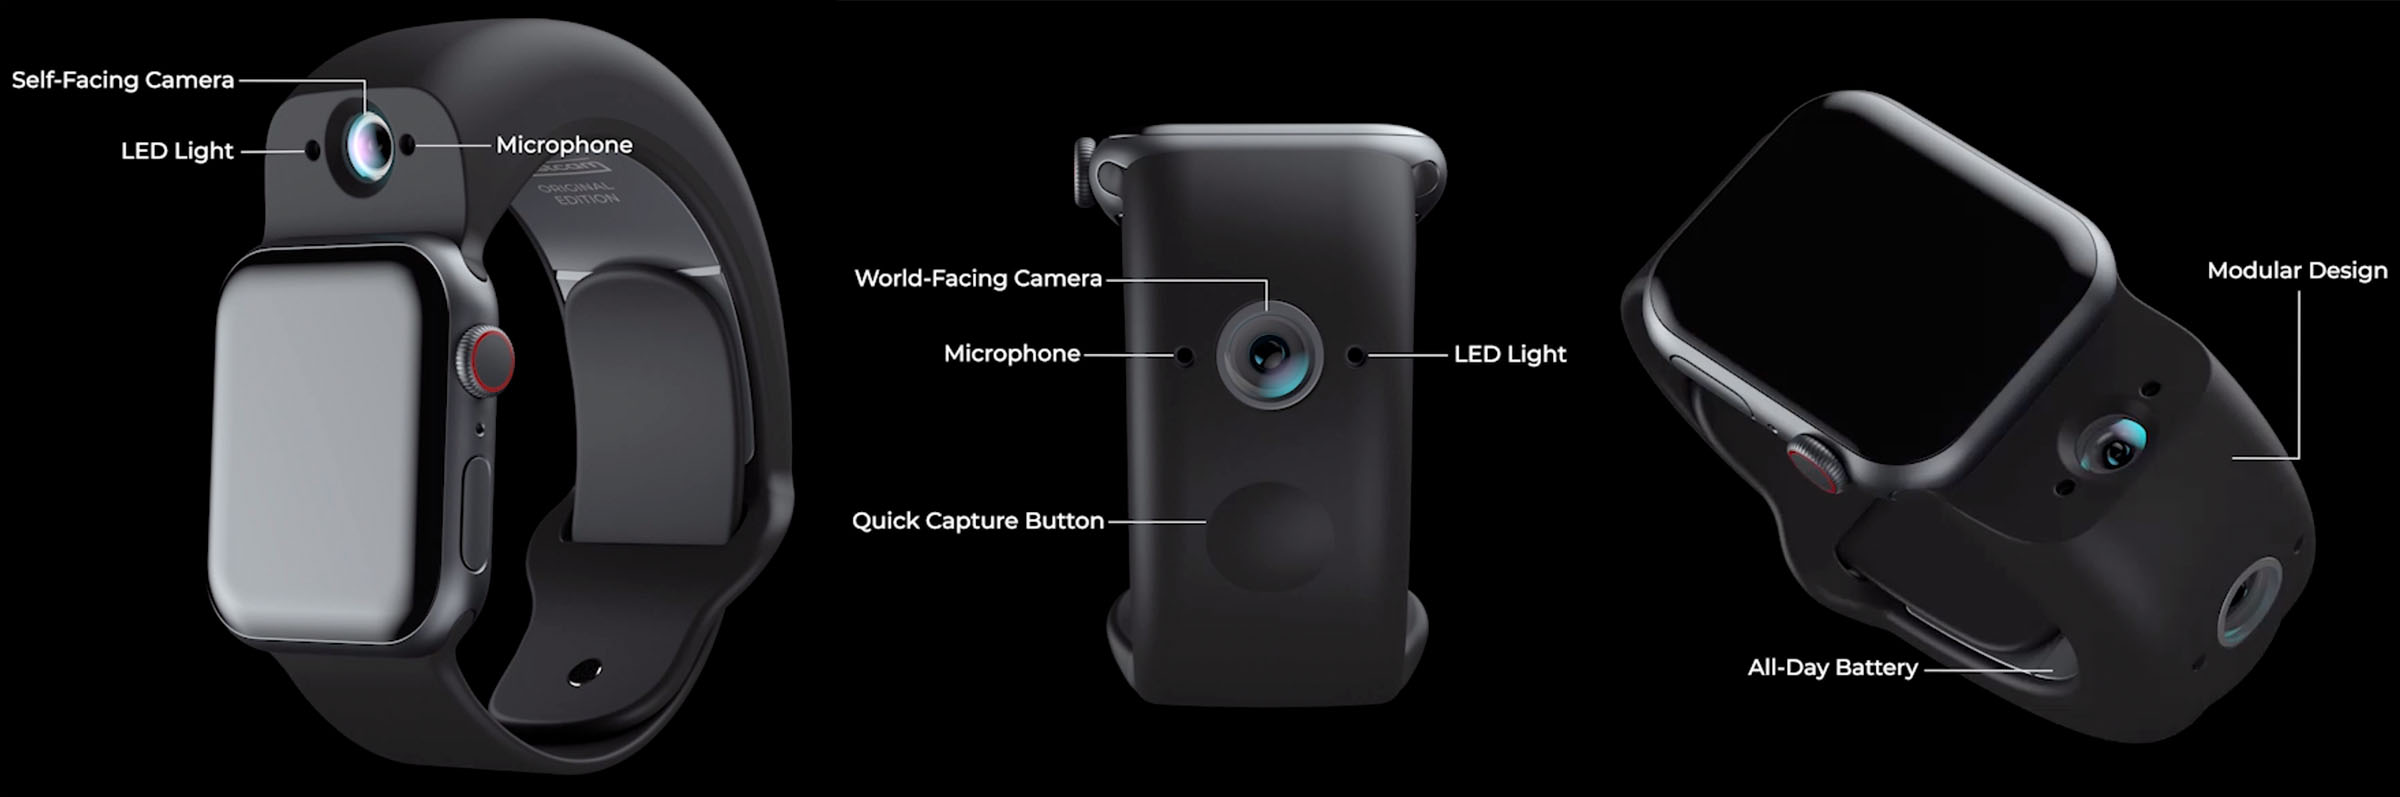 بند اپل واچ Wristcam با دوربین دوگانه و باتری داخلی معرفی شد